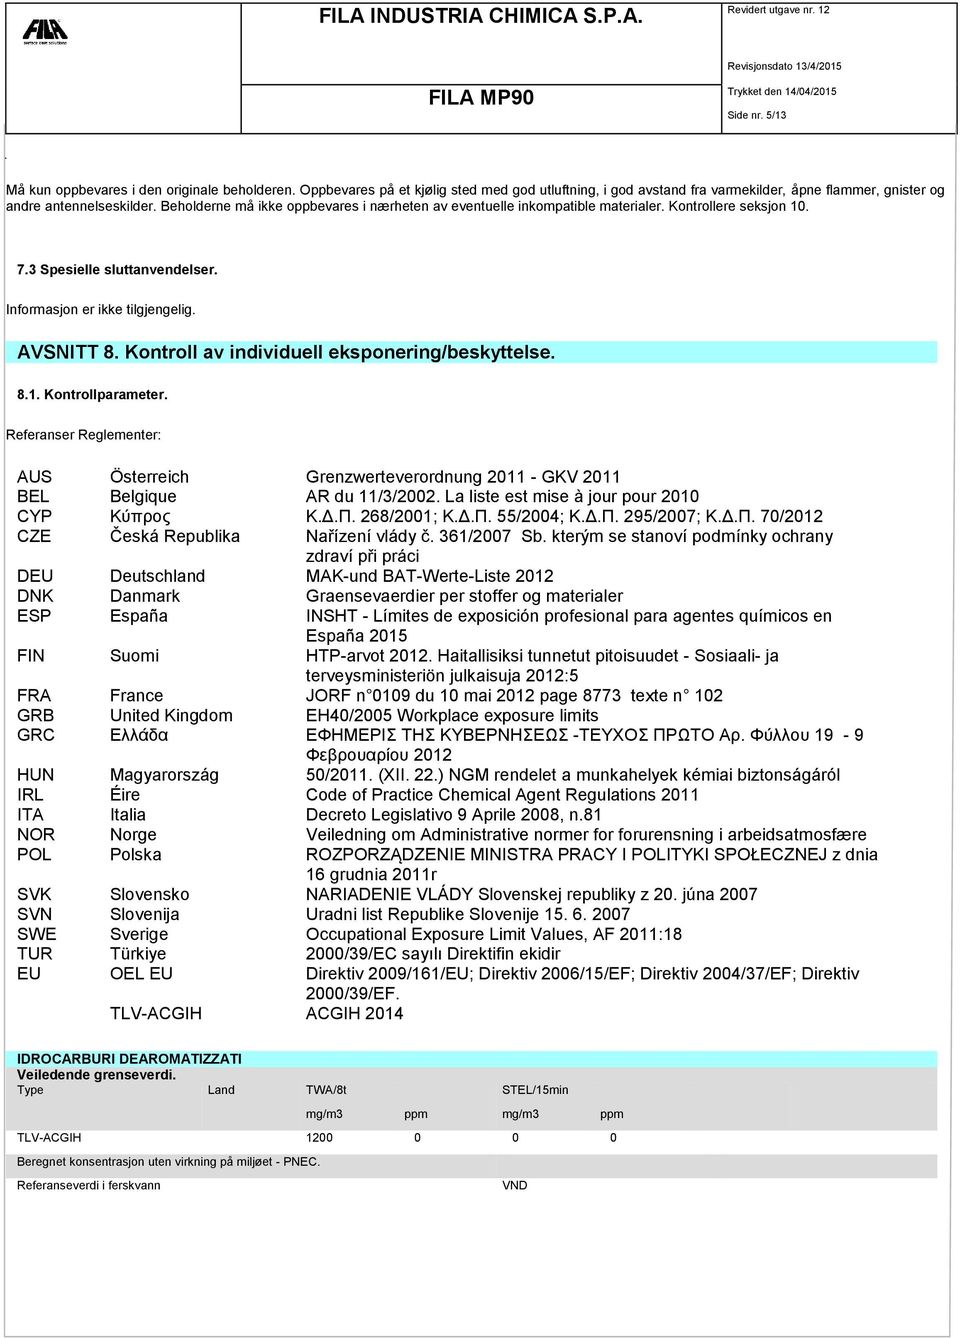 Kontroll av individuell eksponering/beskyttelse. 8.1. Kontrollparameter. Referanser Reglementer: AUS Österreich Grenzwerteverordnung 2011 - GKV 2011 BEL Belgique AR du 11/3/2002.